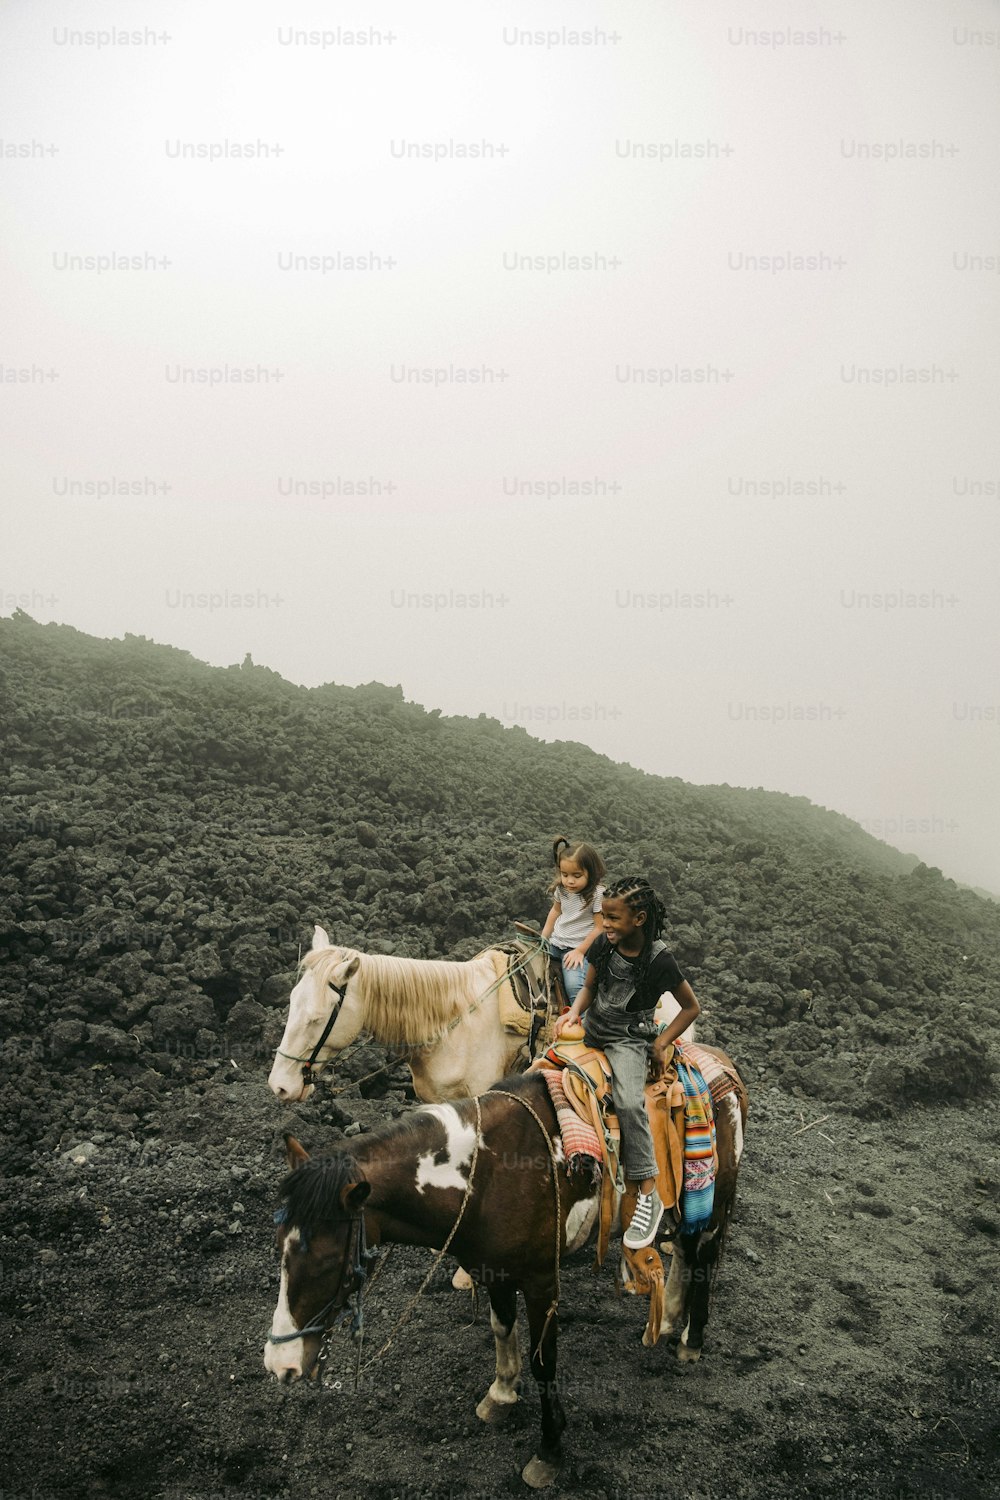 Eine Gruppe von Menschen, die auf dem Rücken von Pferden reiten